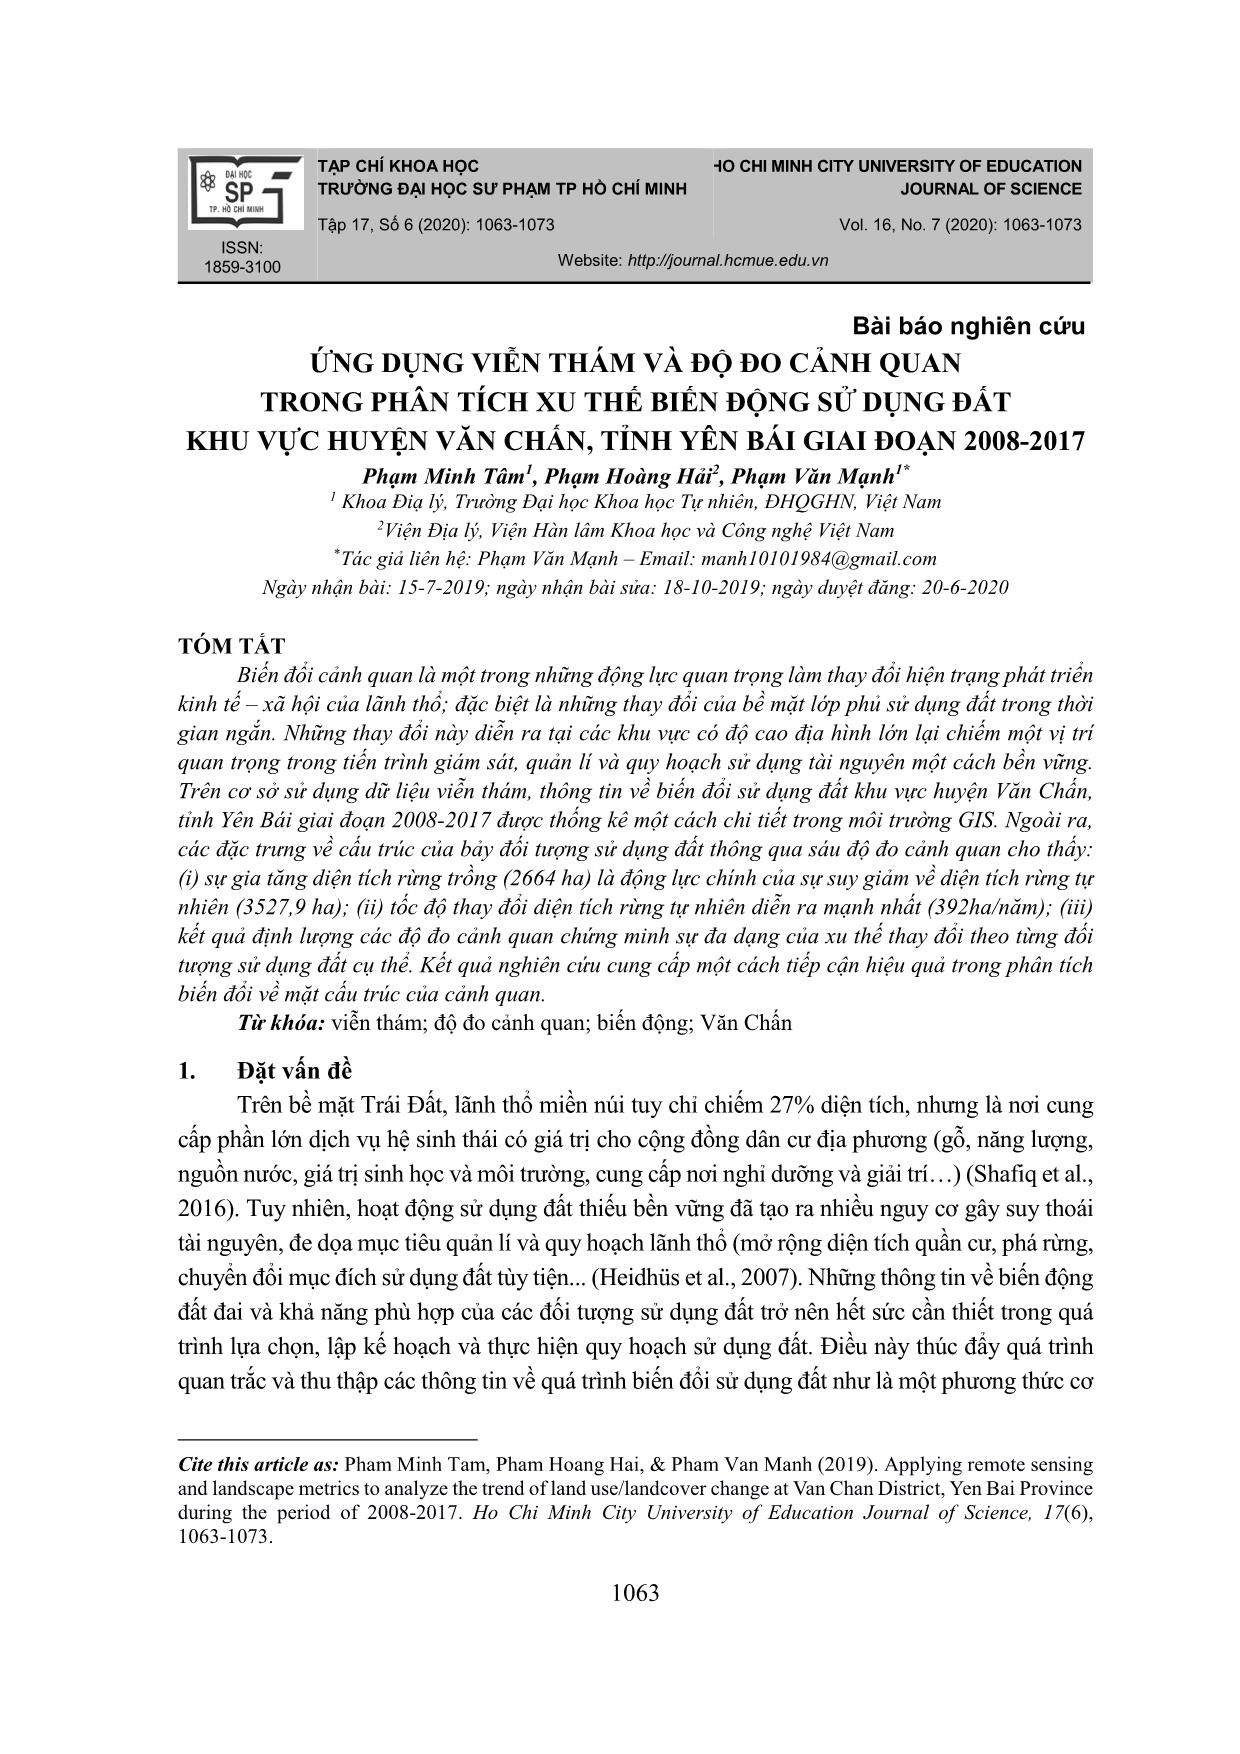 Ứng dụng viễn thám và độ đo cảnh quan trong phân tích xu thế biến động sử dụng đất khu vực huyện Văn Chấn, tỉnh Yên Bái giai đoạn 2008-2017 trang 1